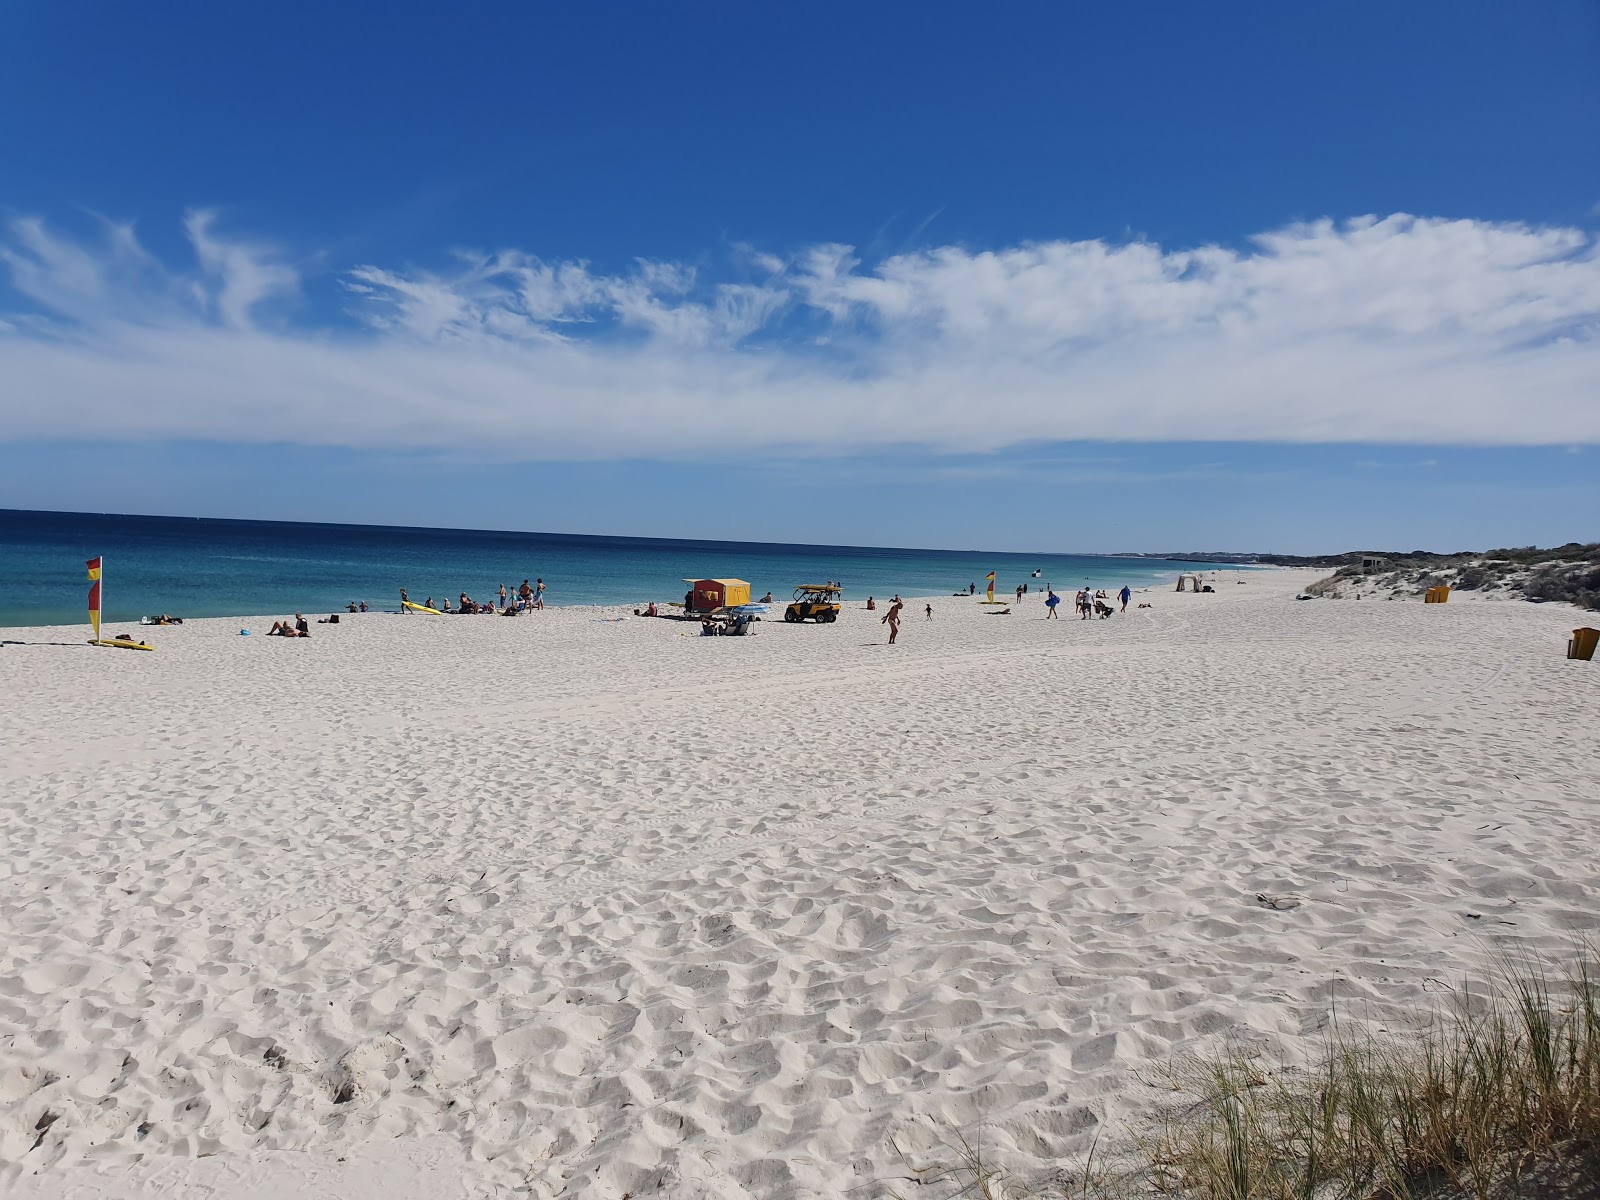 Fotografie cu Mullaioo Beach - locul popular printre cunoscătorii de relaxare